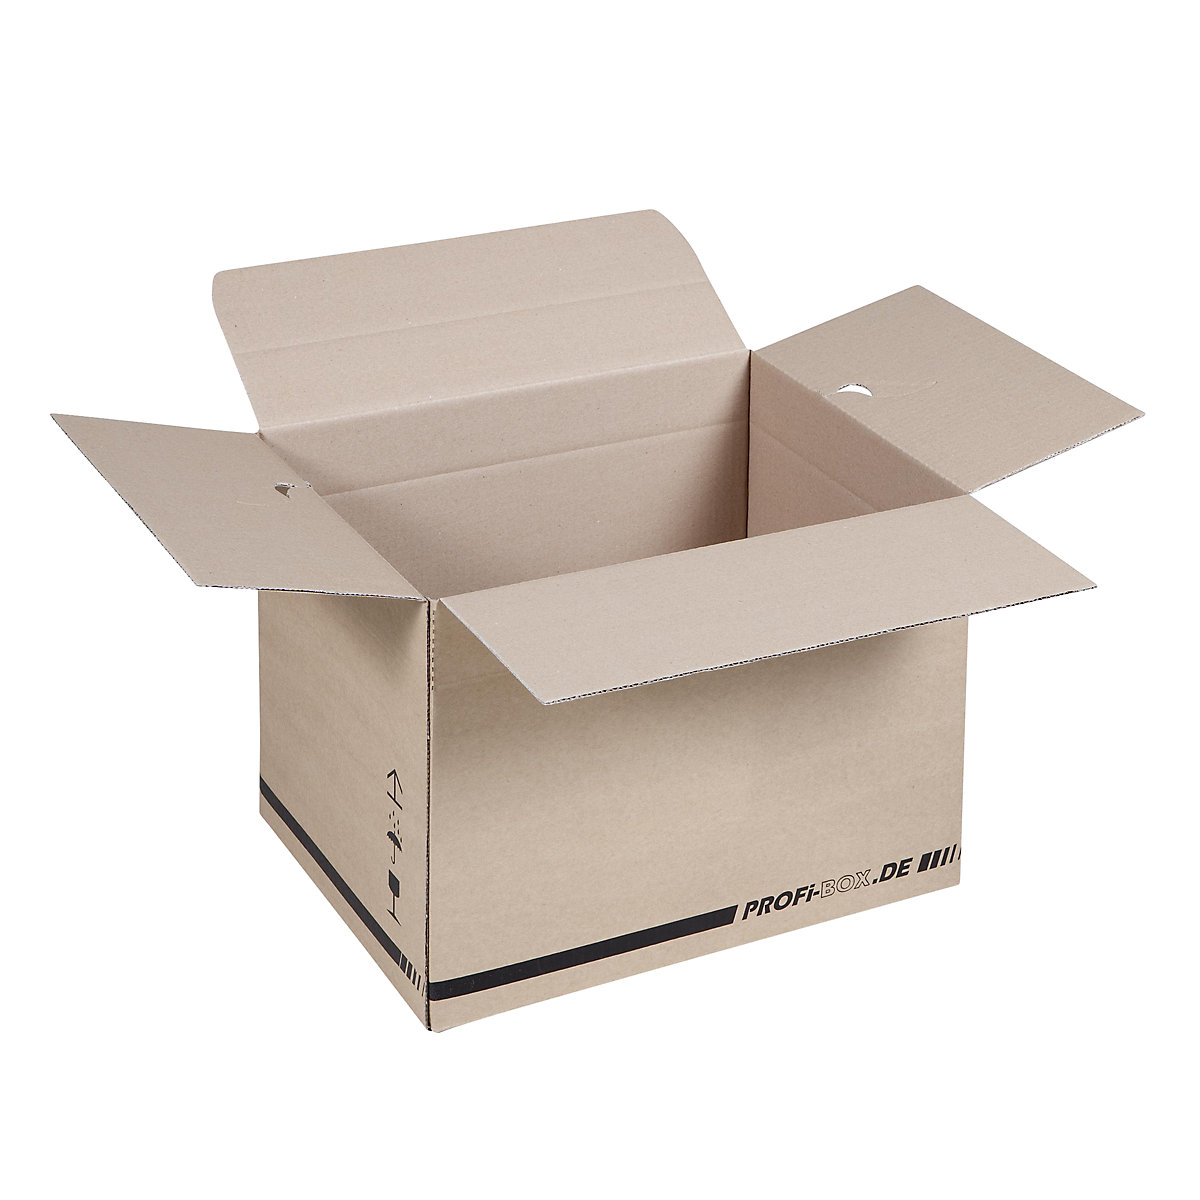 Profesionalne kutije, od 1-valnog kartona, FEFCO 0701, unutarnje dimenzije 384 x 284 x 284 mm, pak. 50 kom.